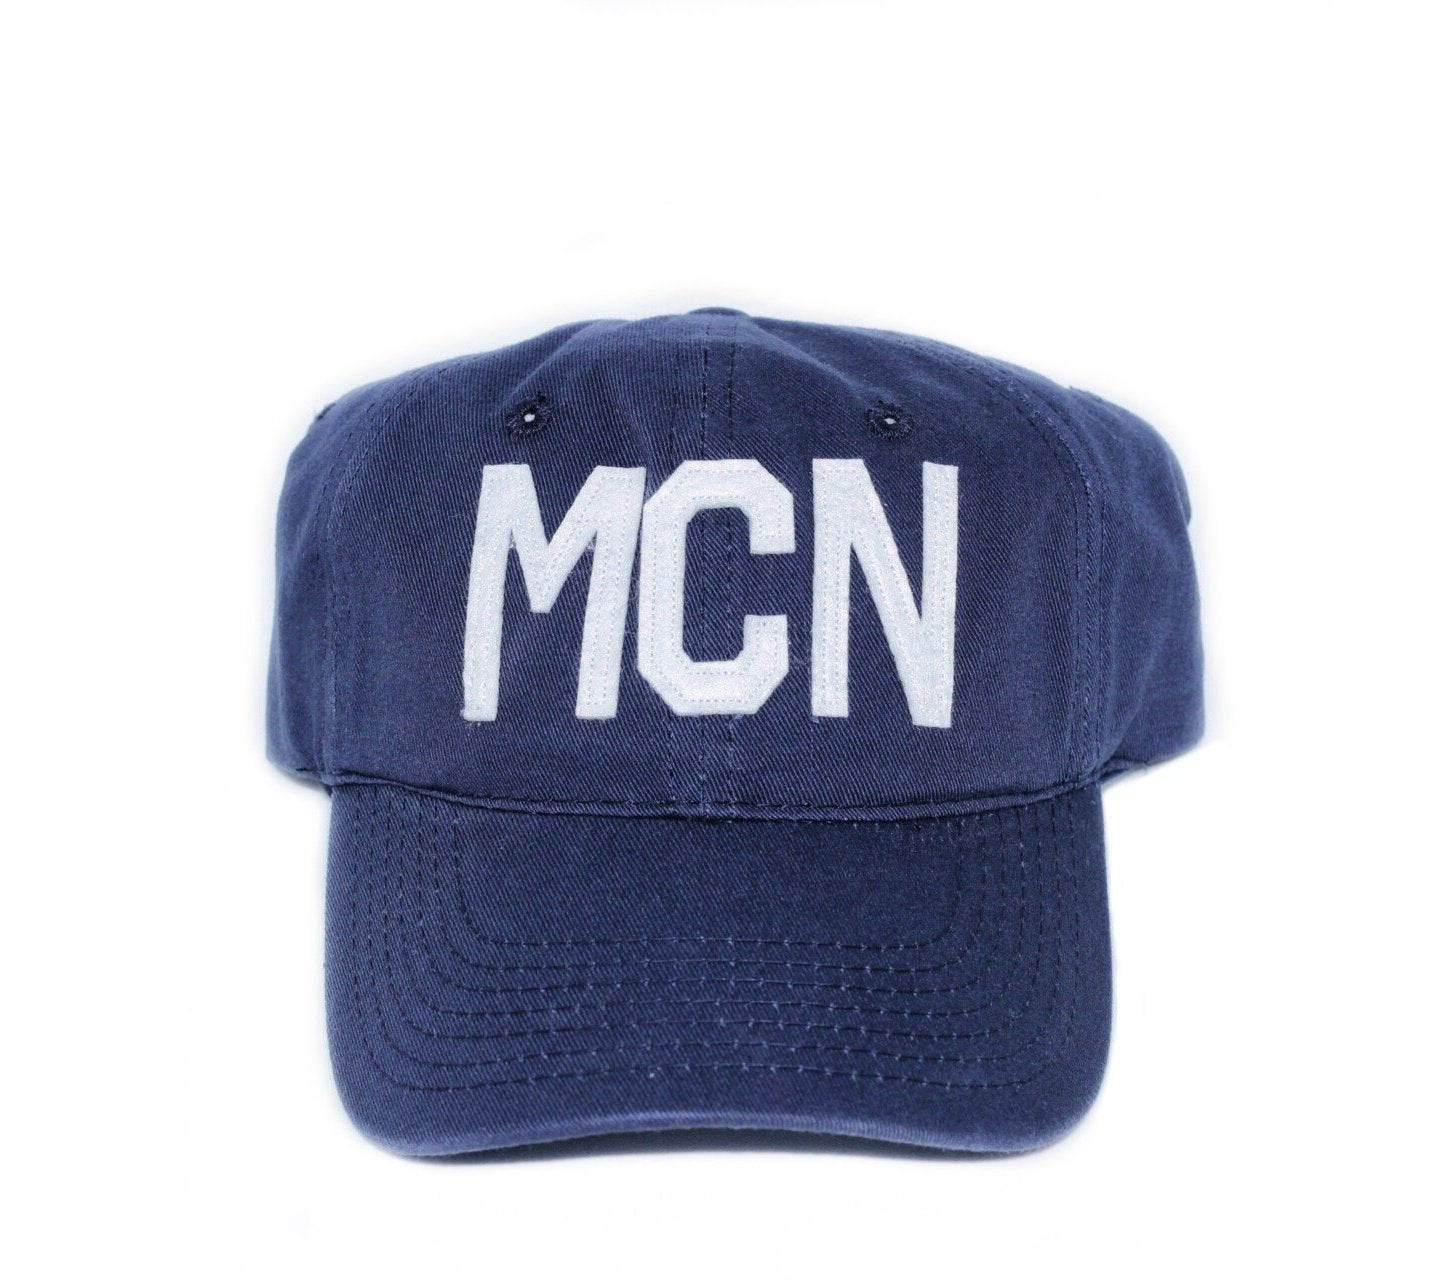 MCN - Macon, GA Hat